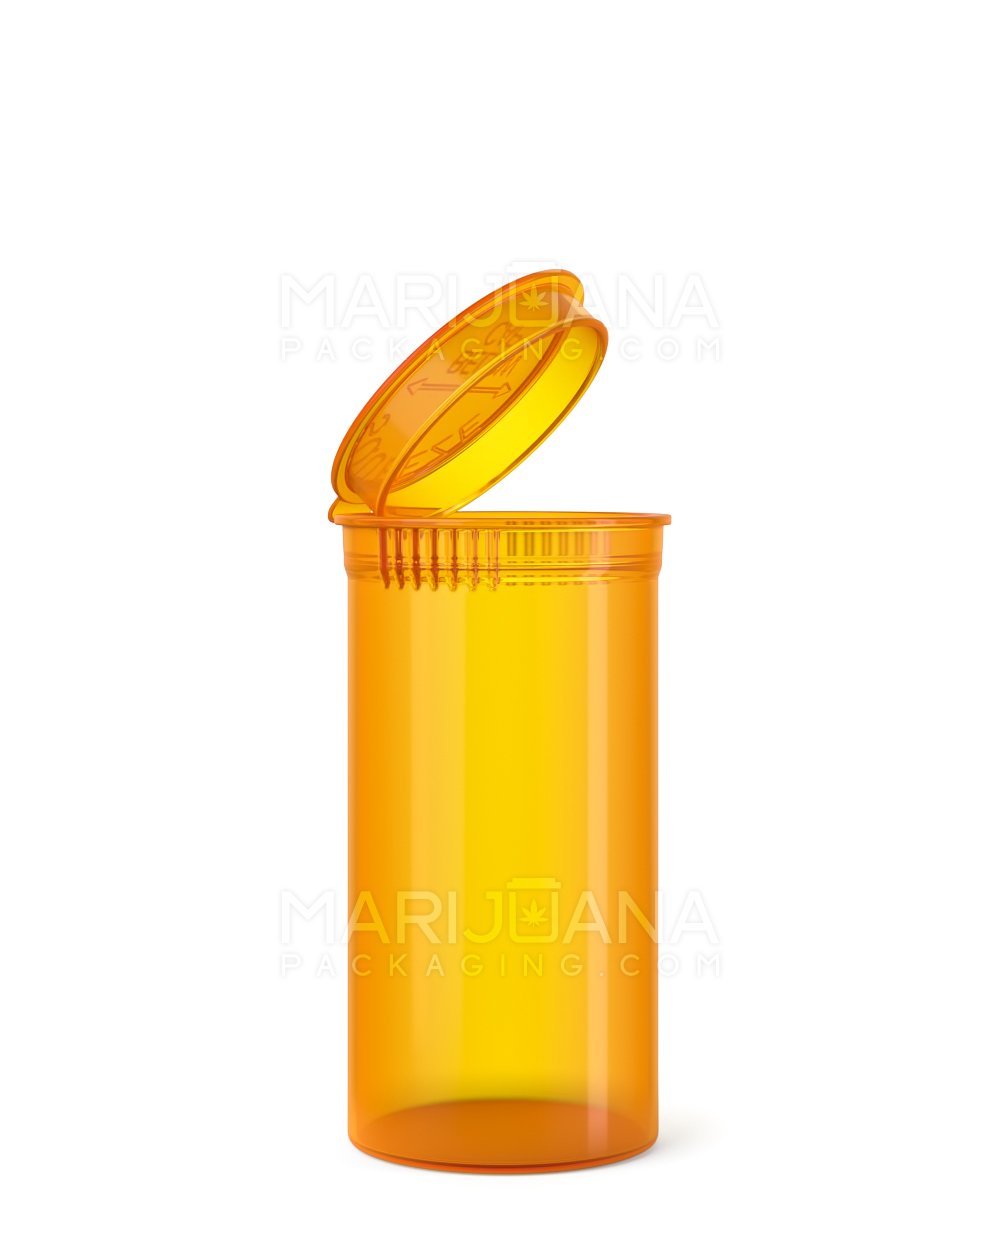 Child Resistant | Transparent Amber Pop Top Bottles | 13dr - 2g - 315 Count - 1